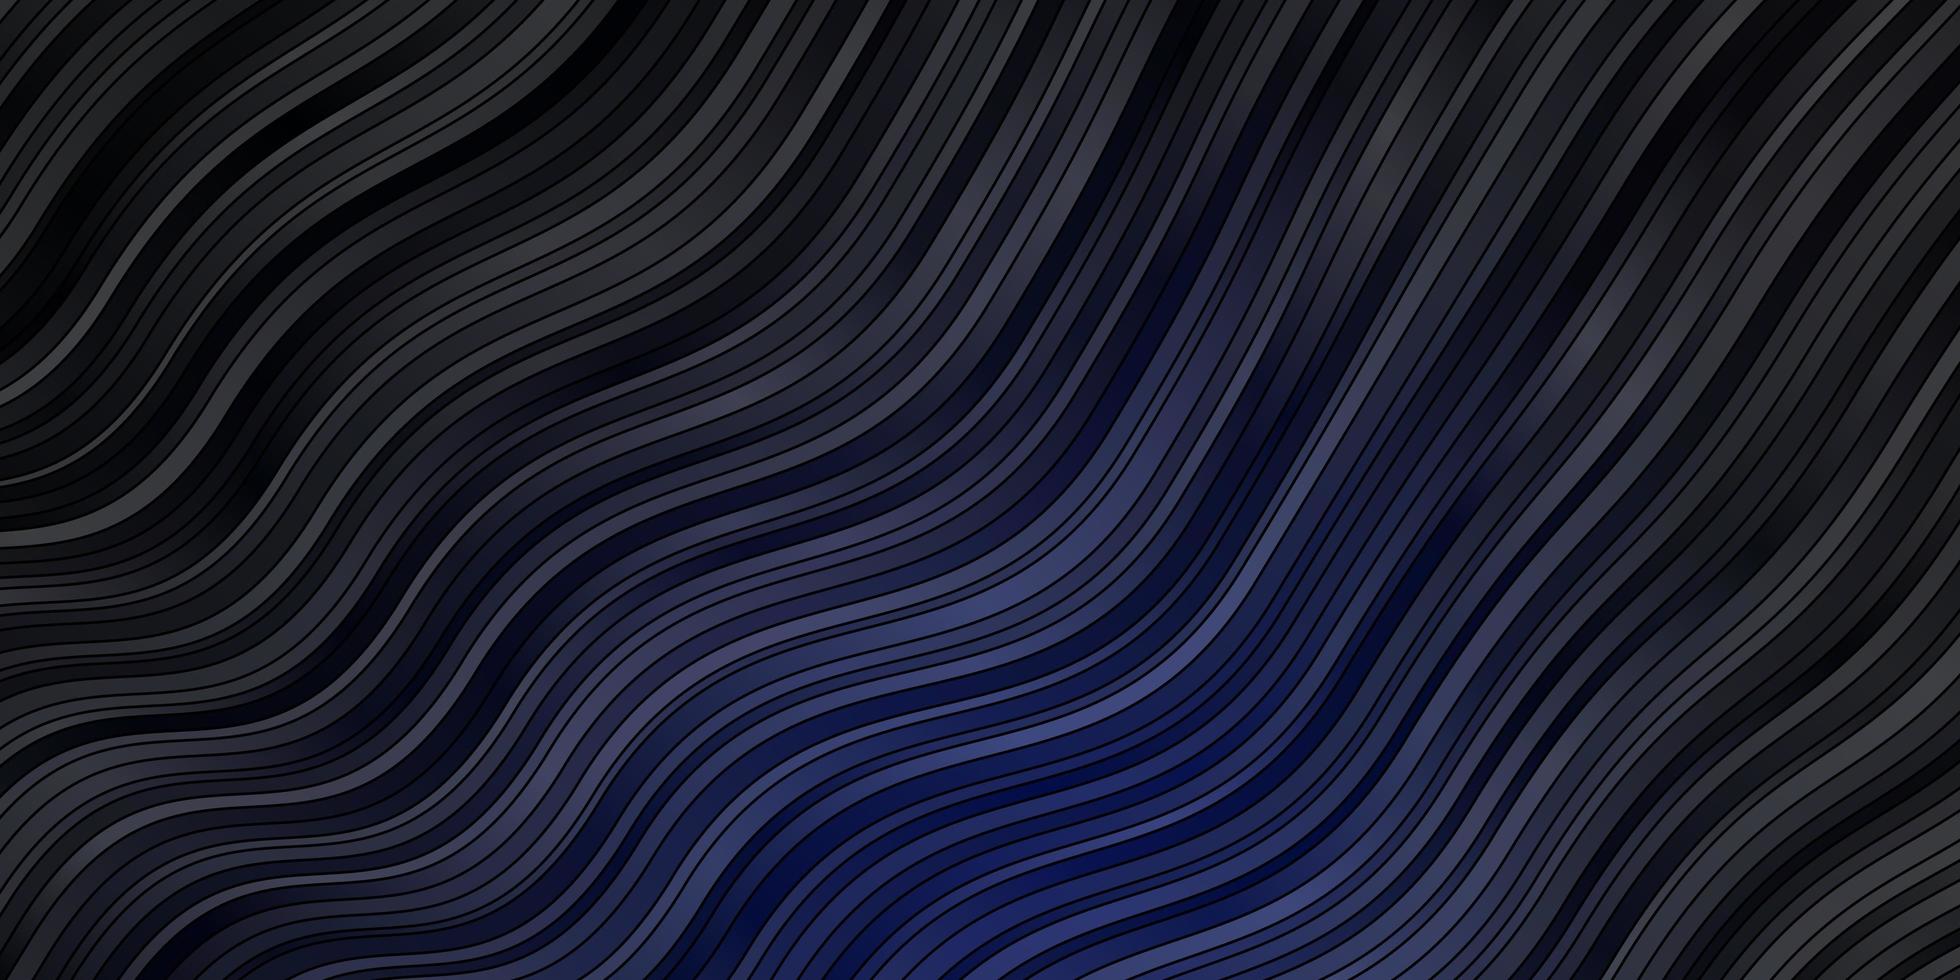 plantilla de vector azul oscuro con curvas.